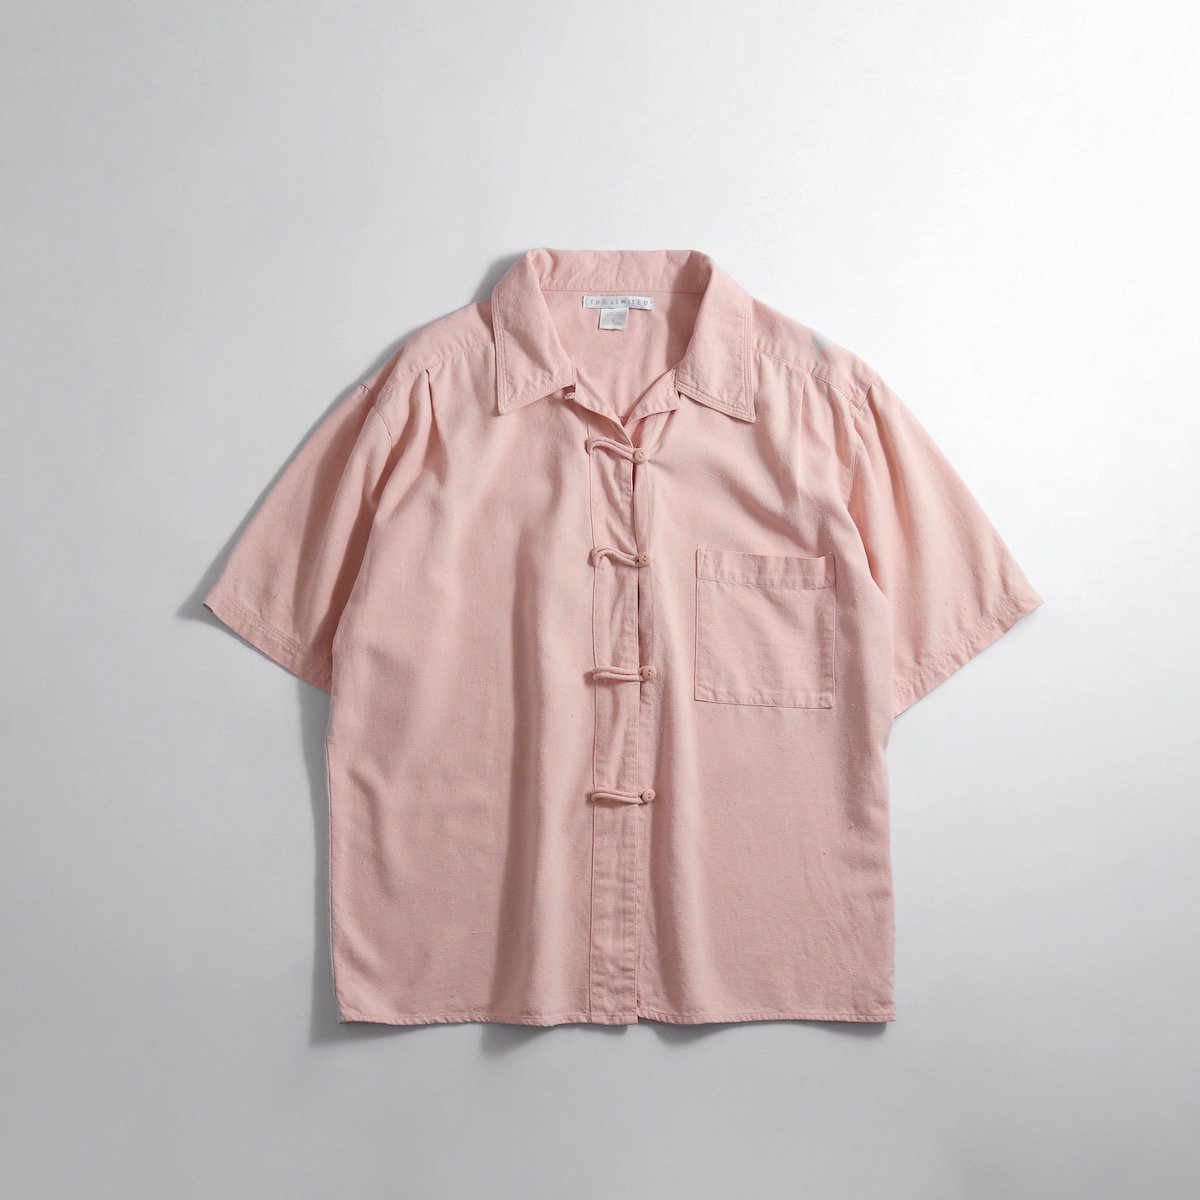 レディース 1990s シルク チャイナシャツ 半袖 ピンク